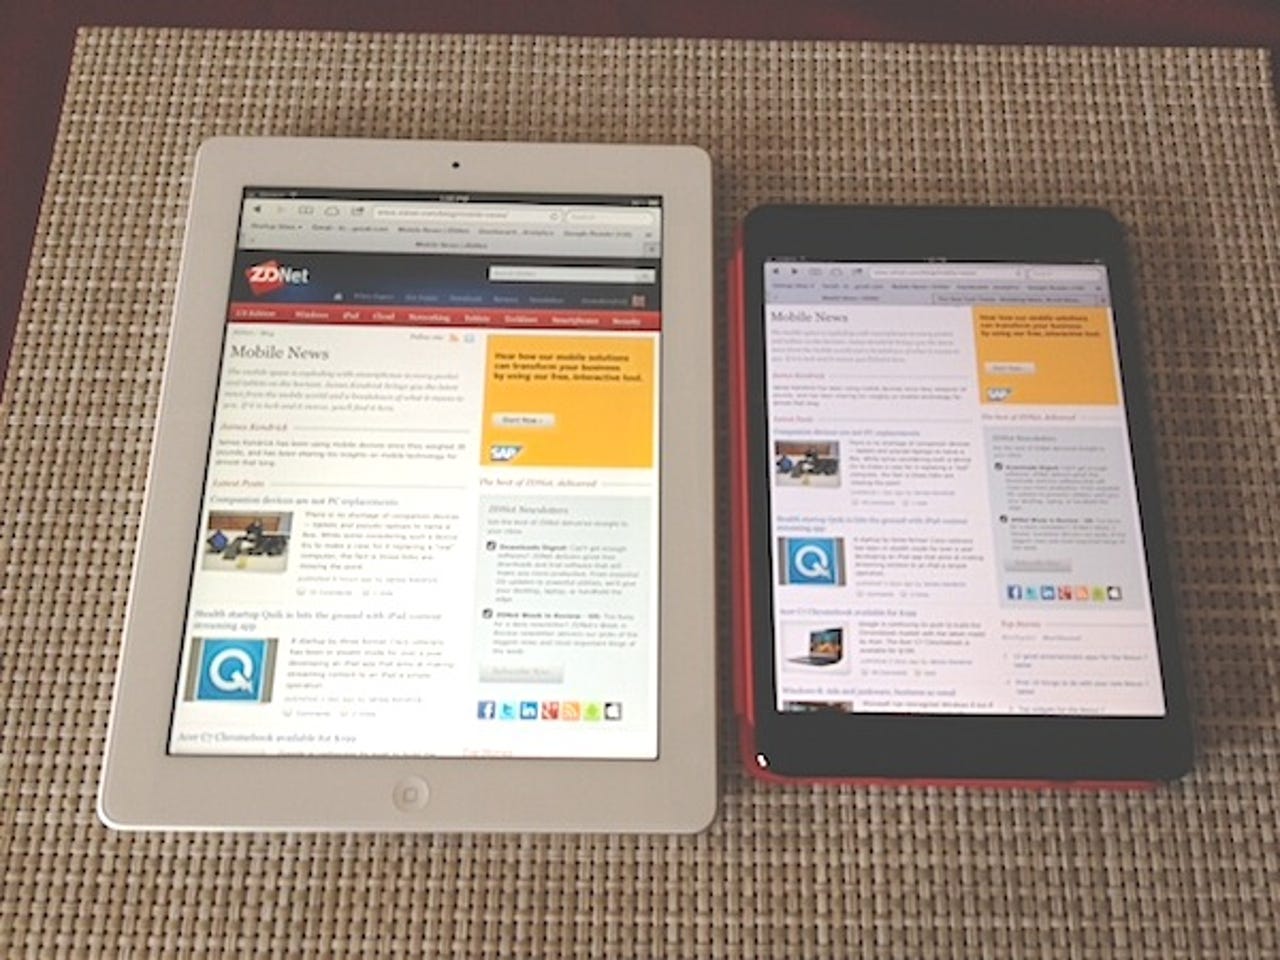 iPad and mini